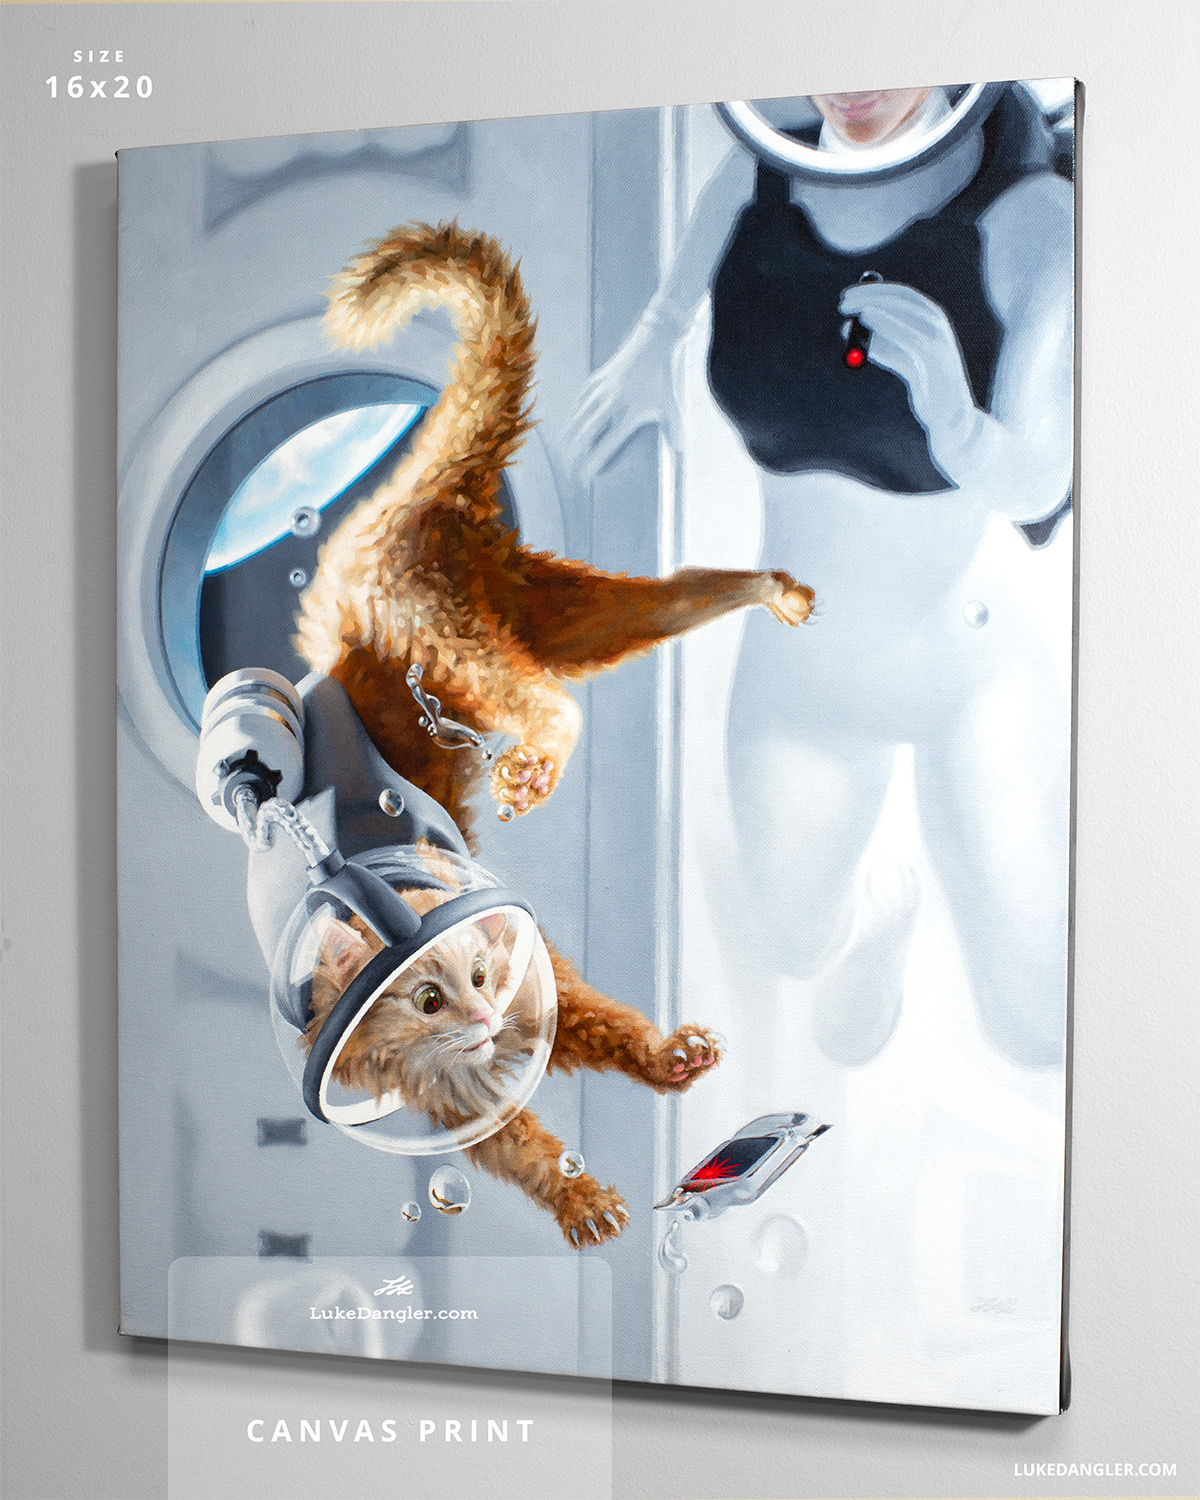 Space Cat Series - Luke Dangler